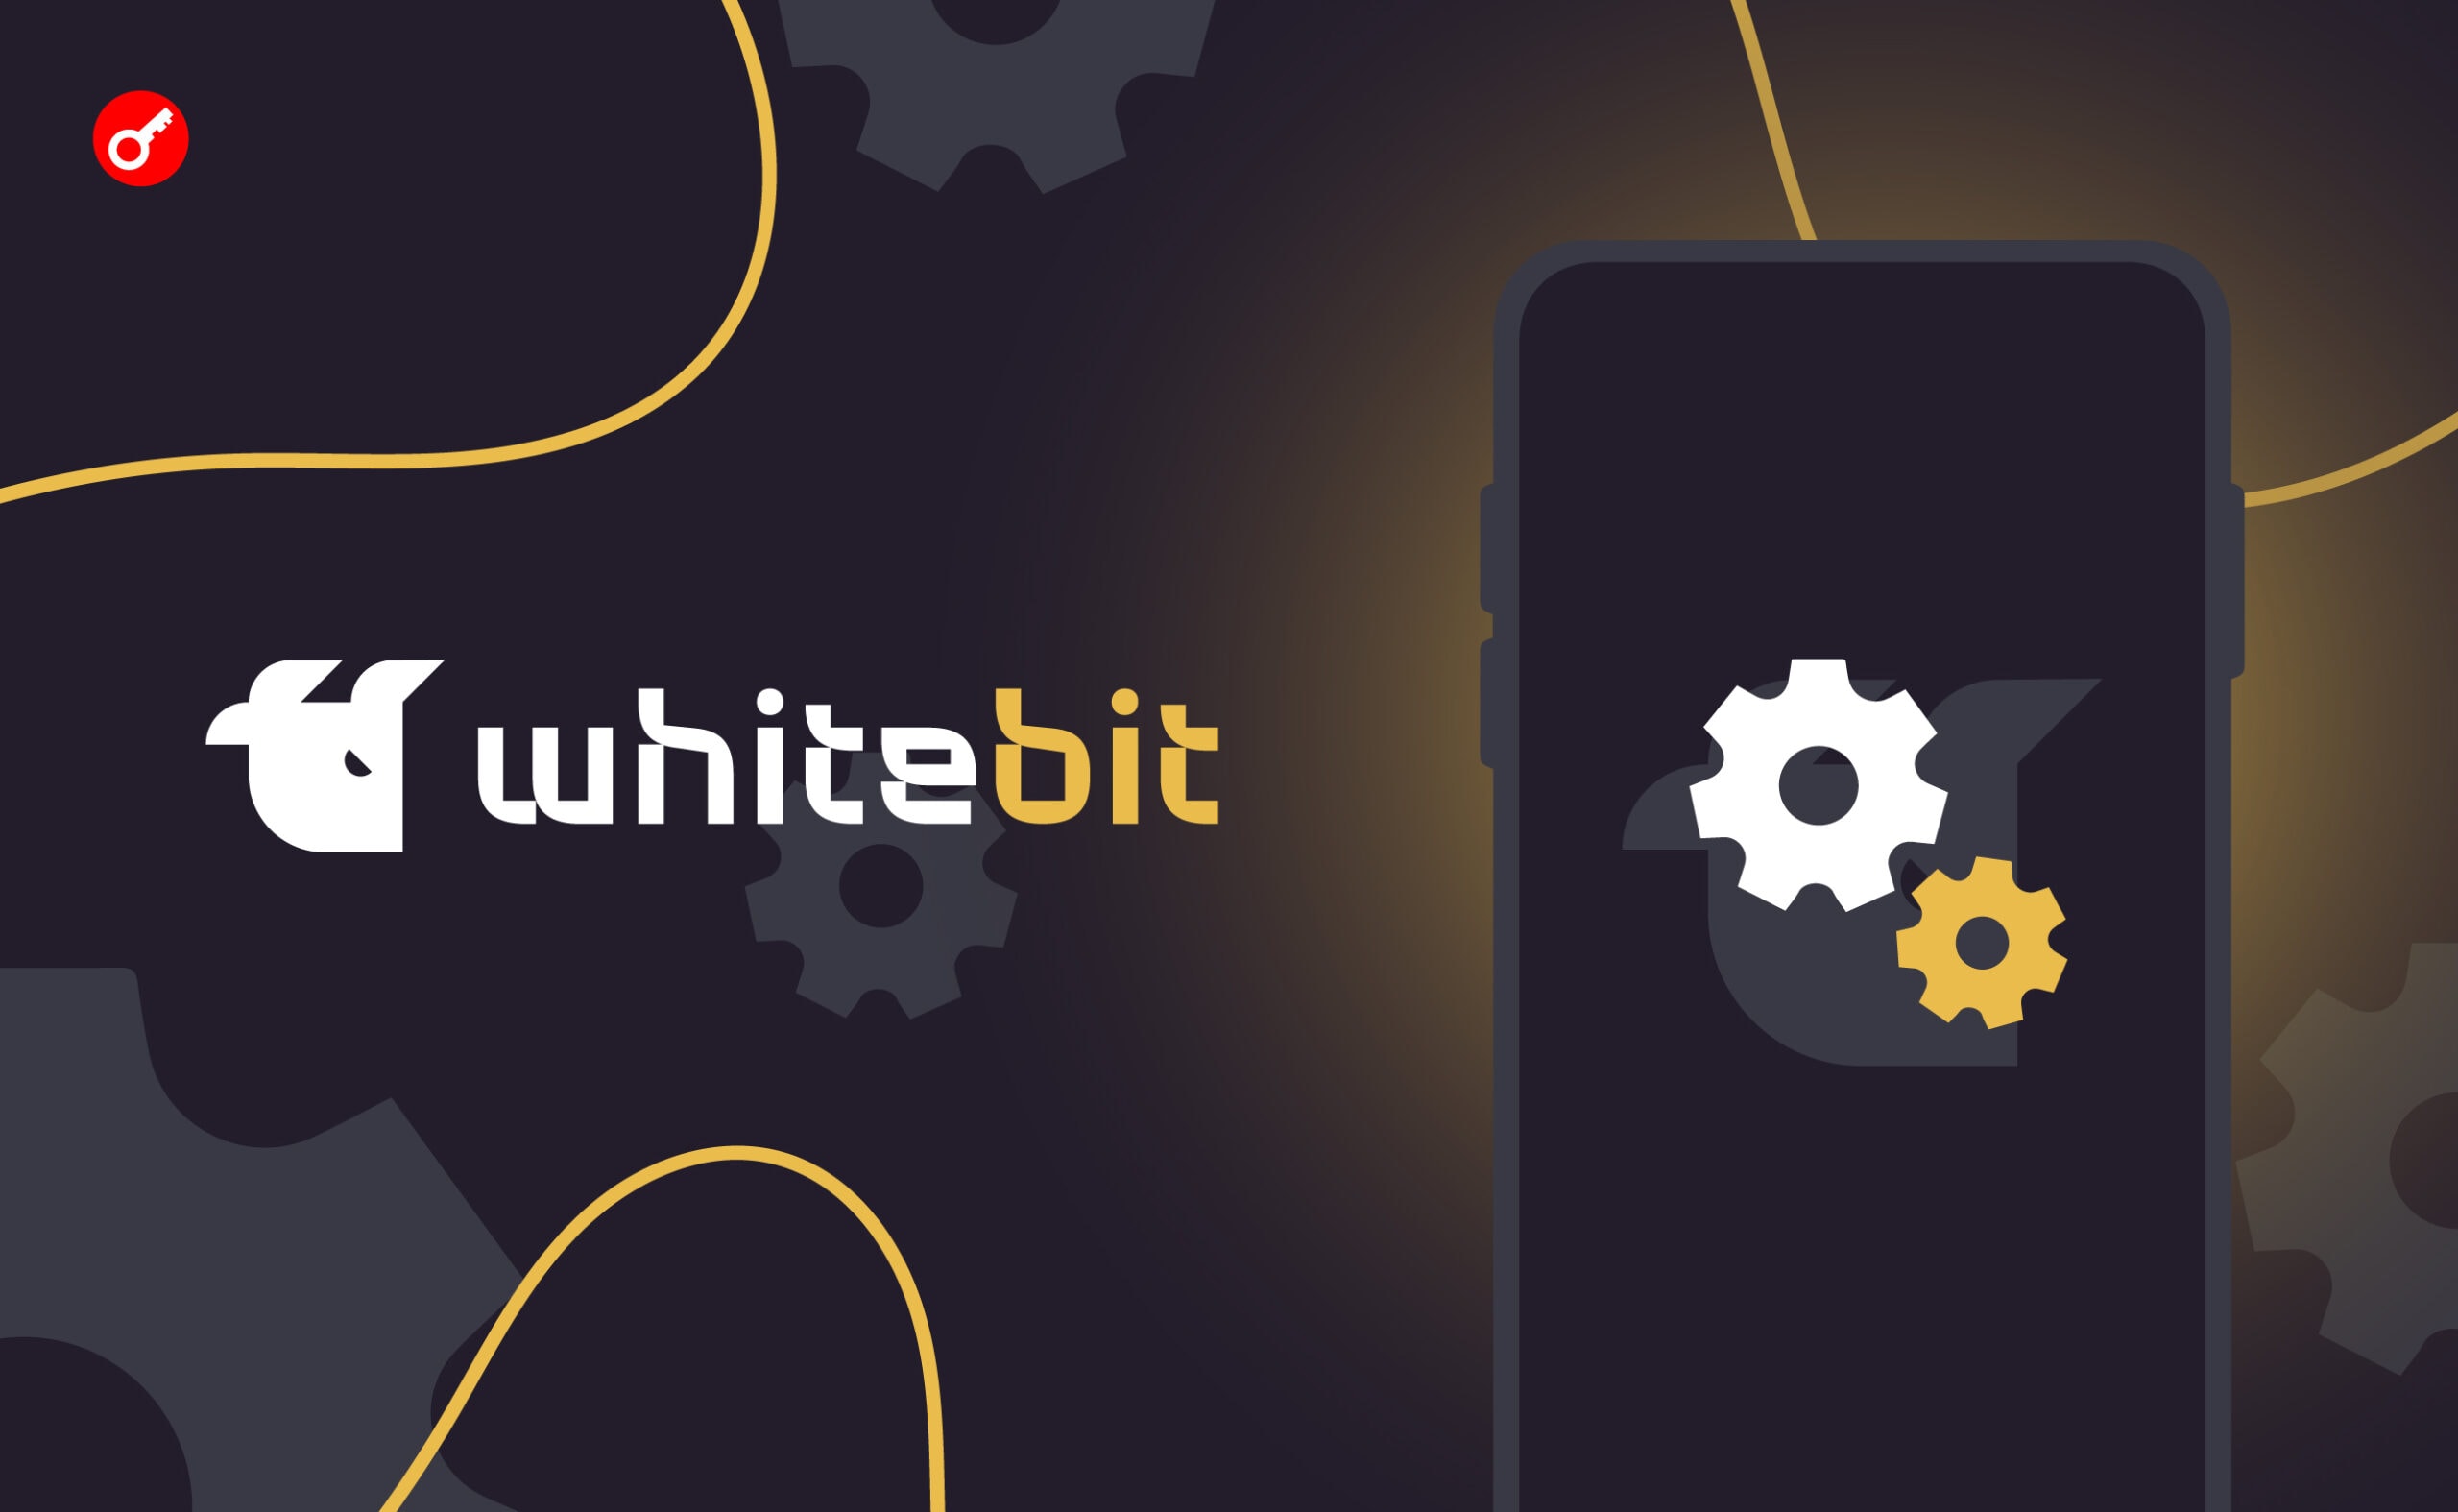 WhiteBIT Launchpad объявила о начале голосования за новый проект. Заглавный коллаж новости.